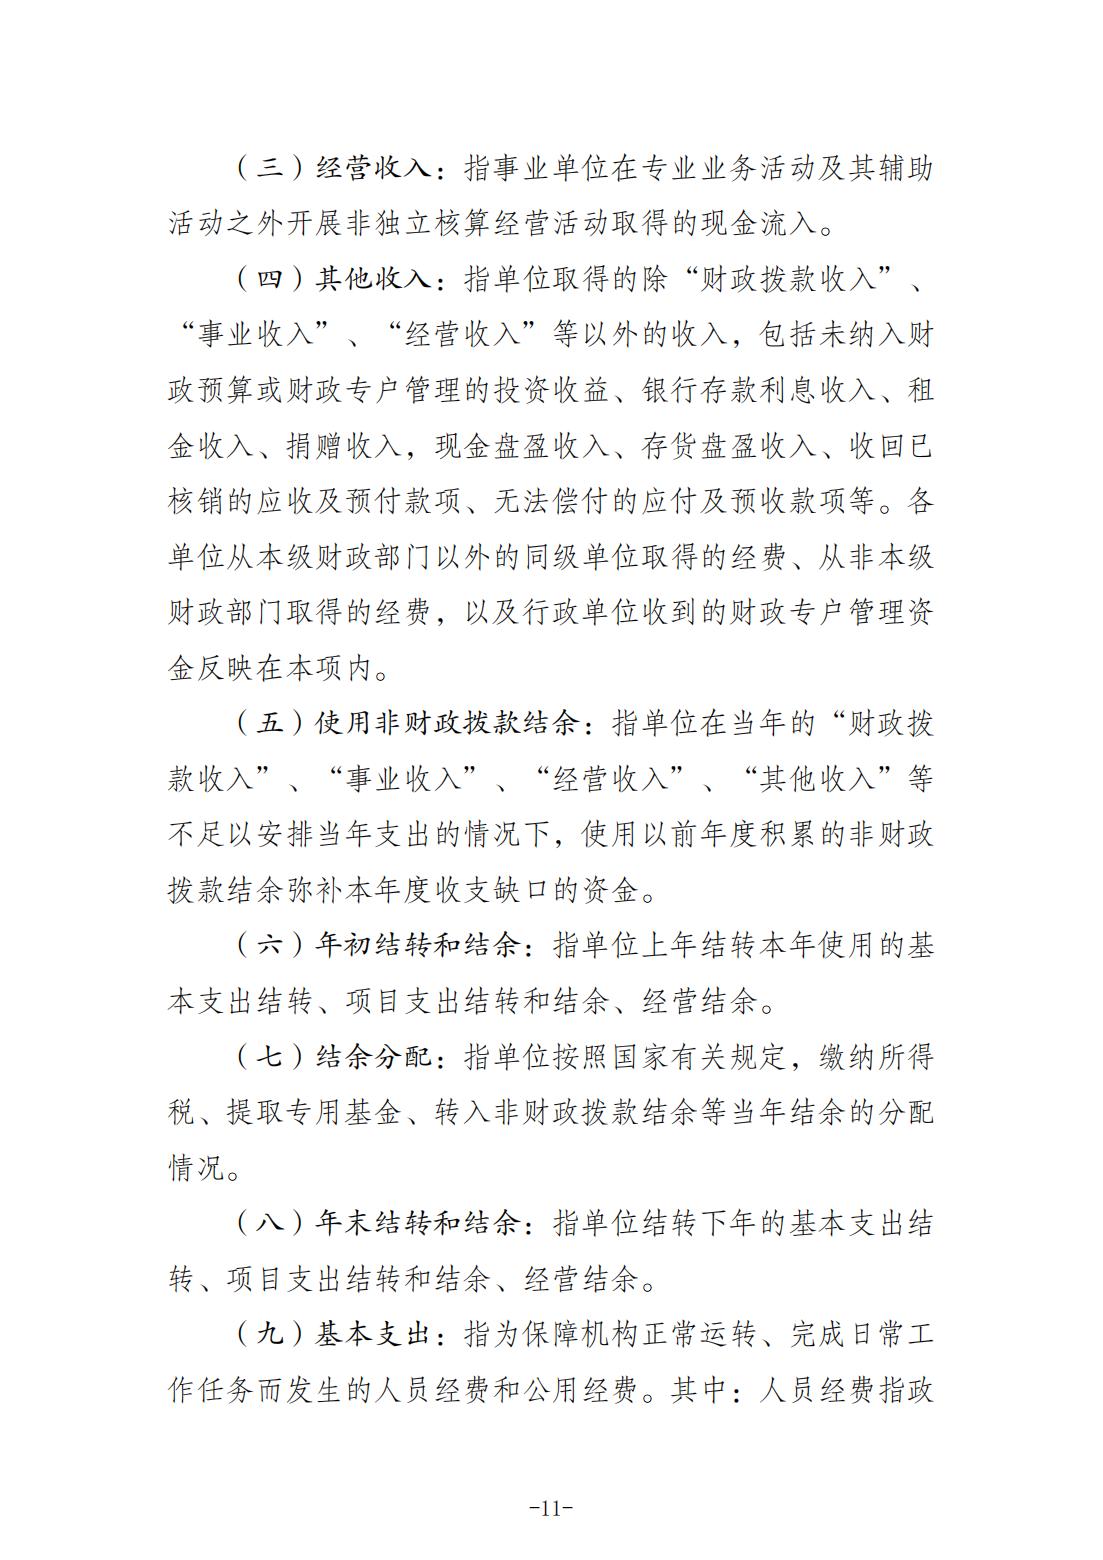 重庆城市职业学院2021年度部门决算情况说明_10.jpg